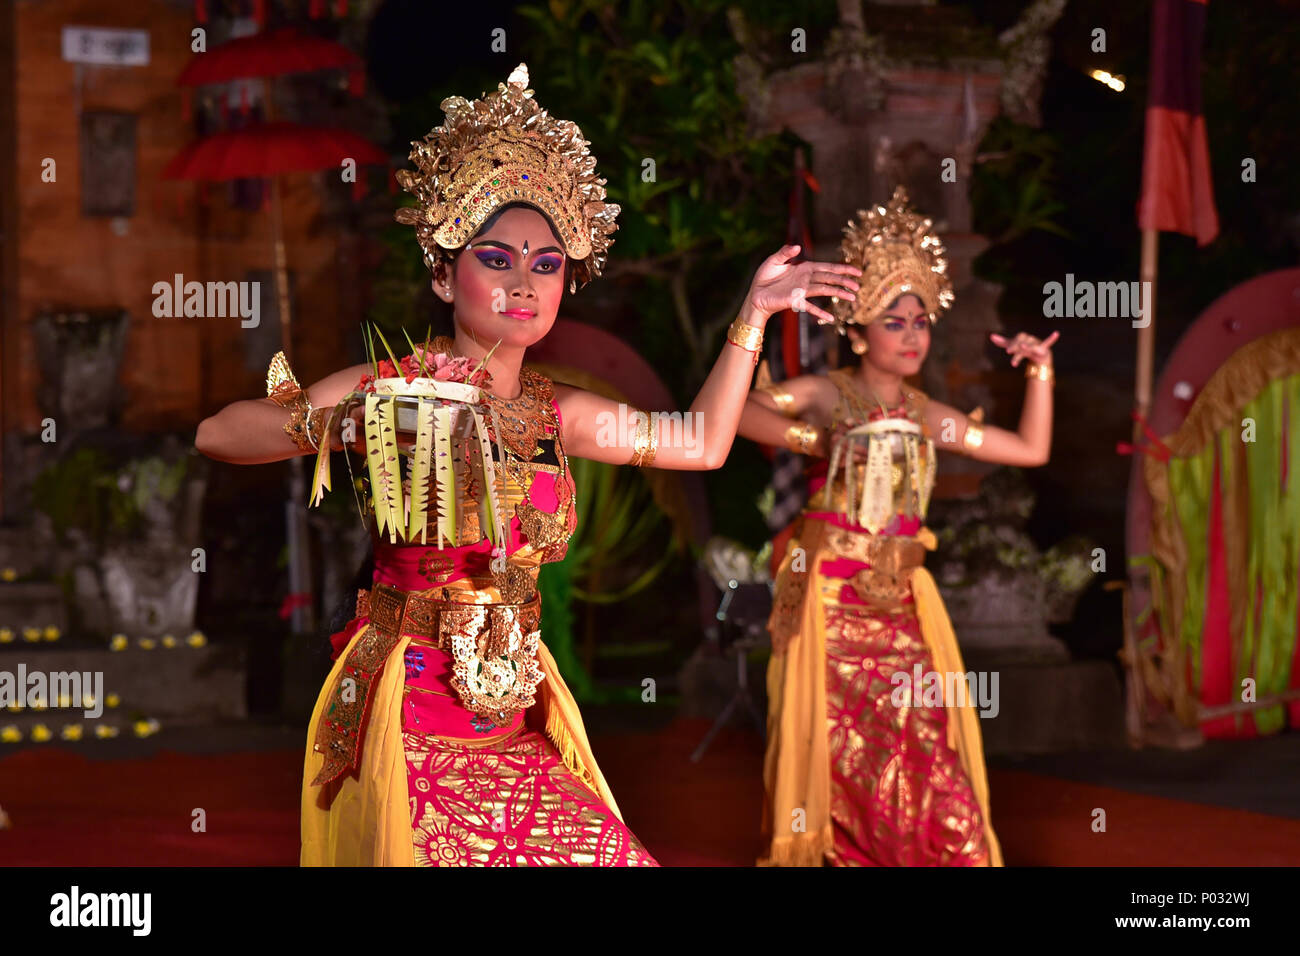 Artistes de la danse balinaise, une ancienne tradition de danse sur l'île de Bali, Indonésie Banque D'Images